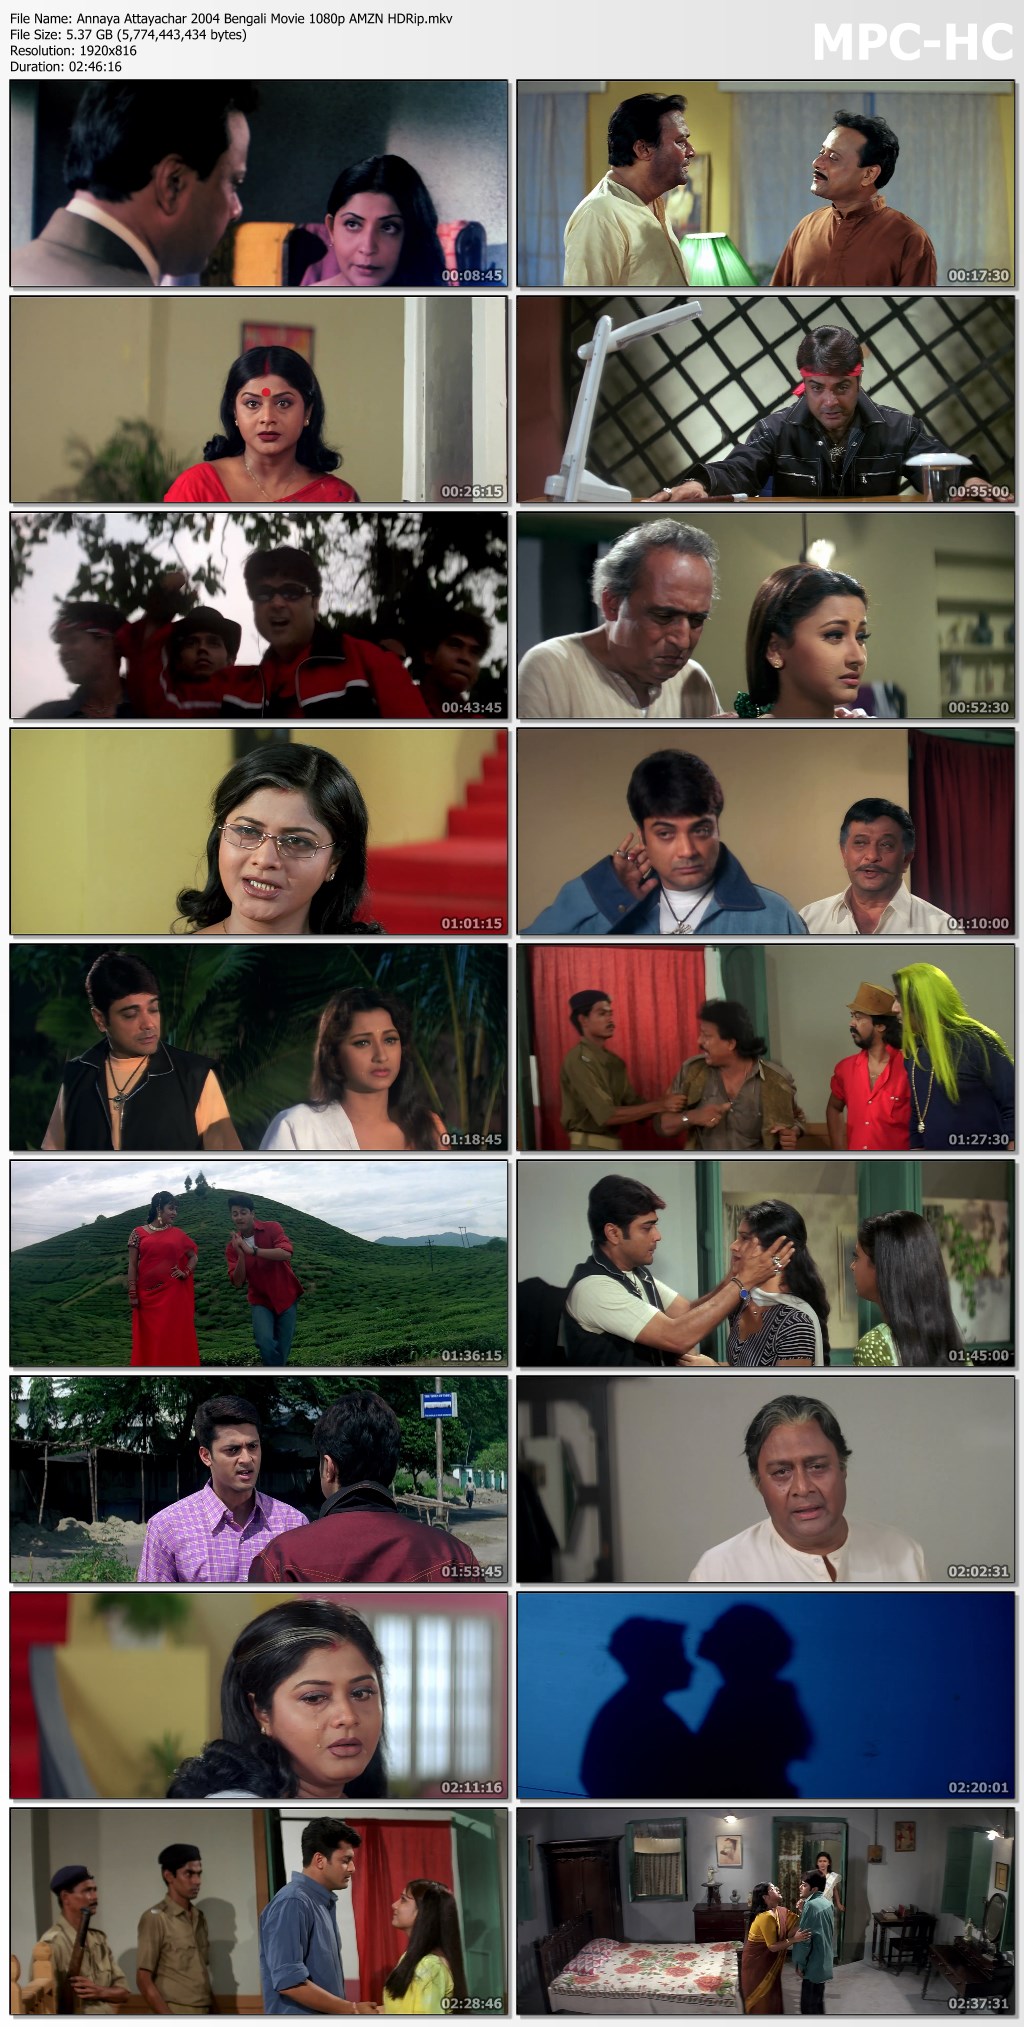 Annaya Attayachar 2004 Bengali Movie 1080p AMZN HDRip.mkv thumbs